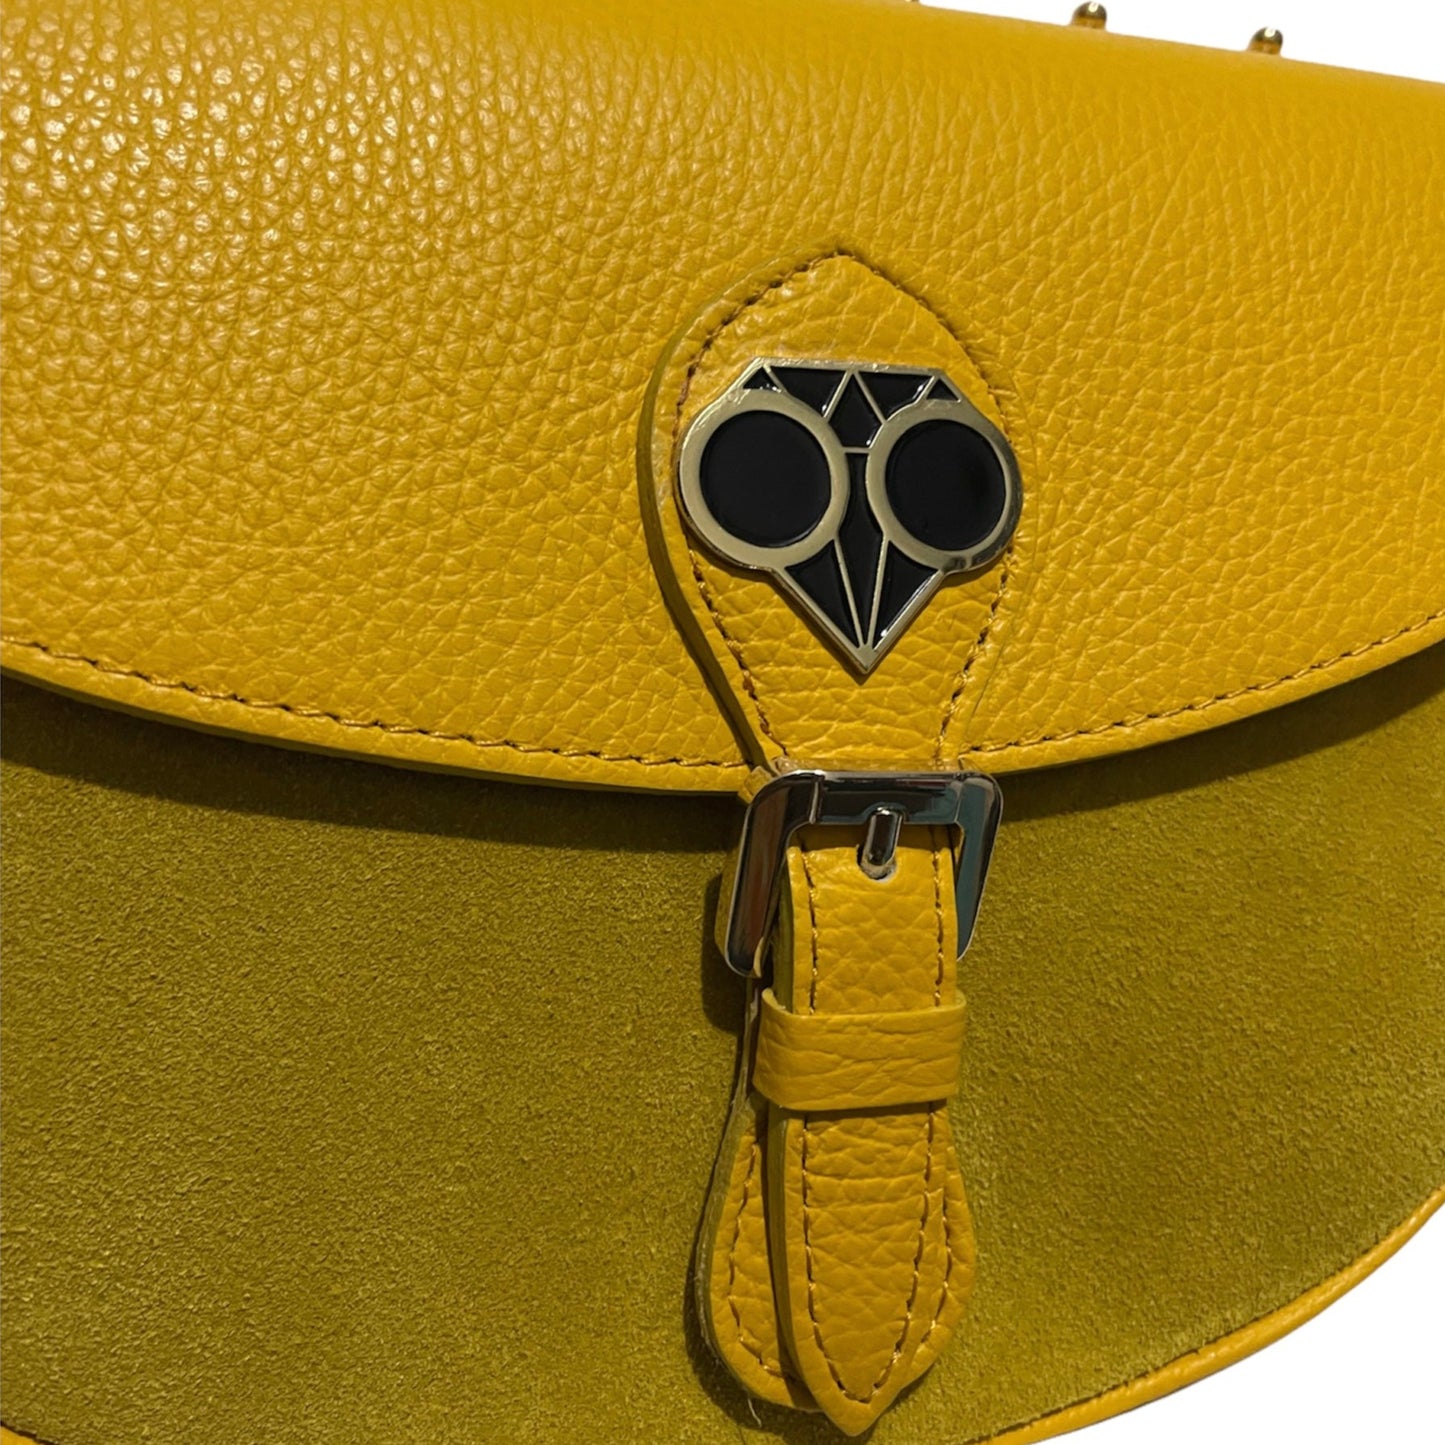 The Sandrina Yellow Bag